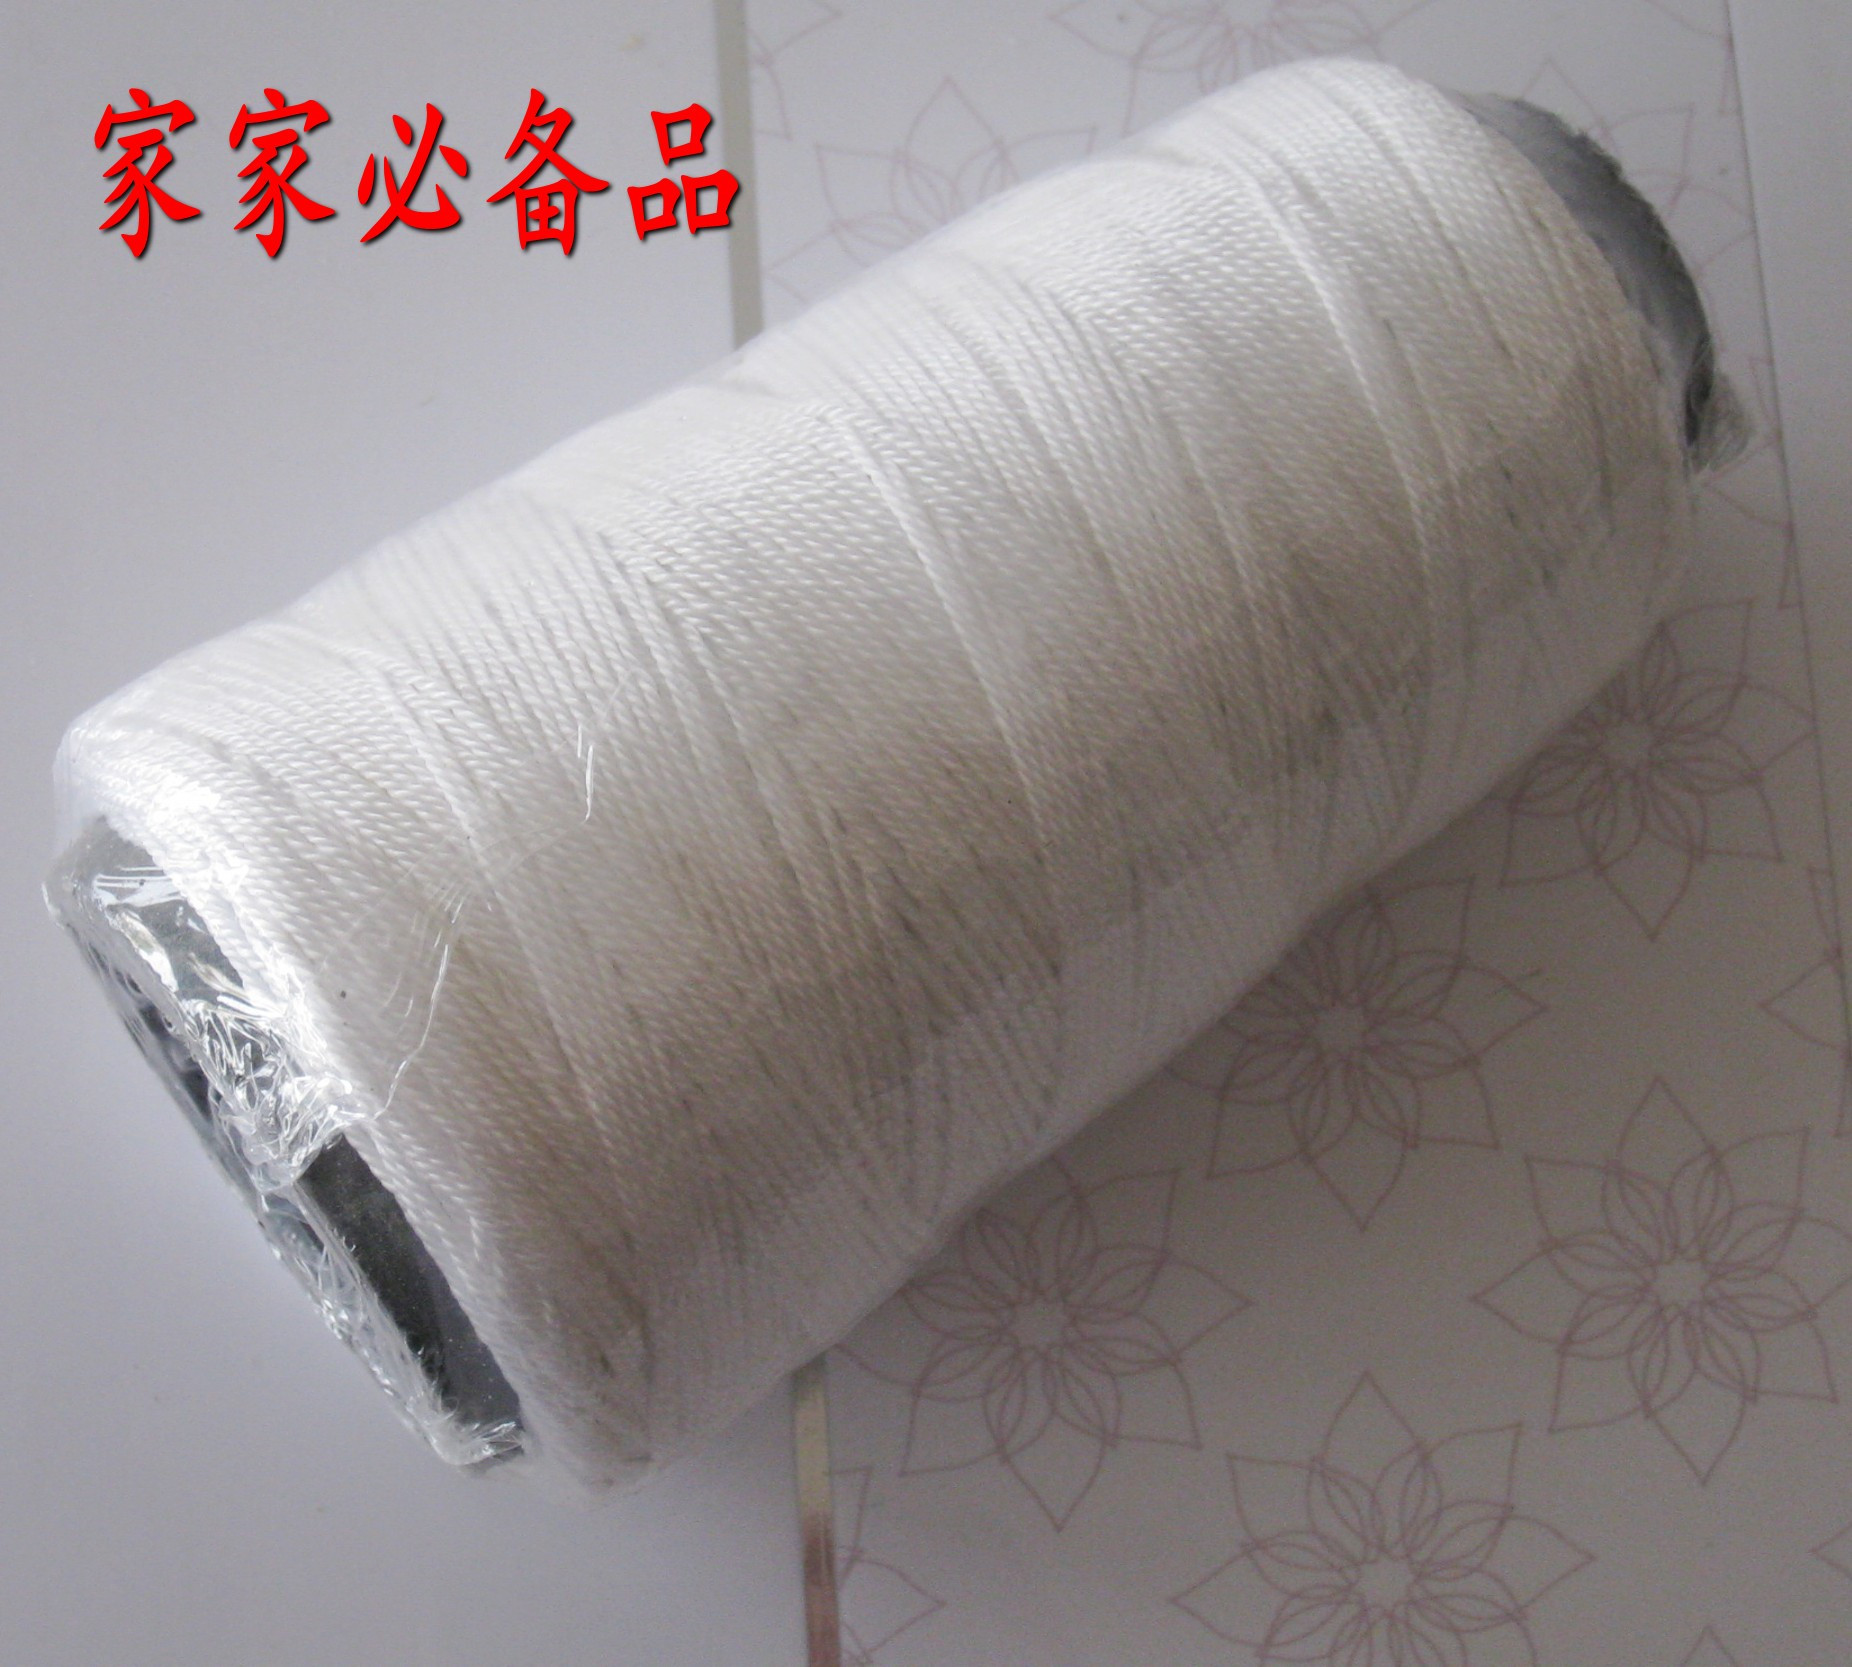 包装绳 尼龙绳 白团线 可用来包装和编织物品5.00元一捆,家装必备